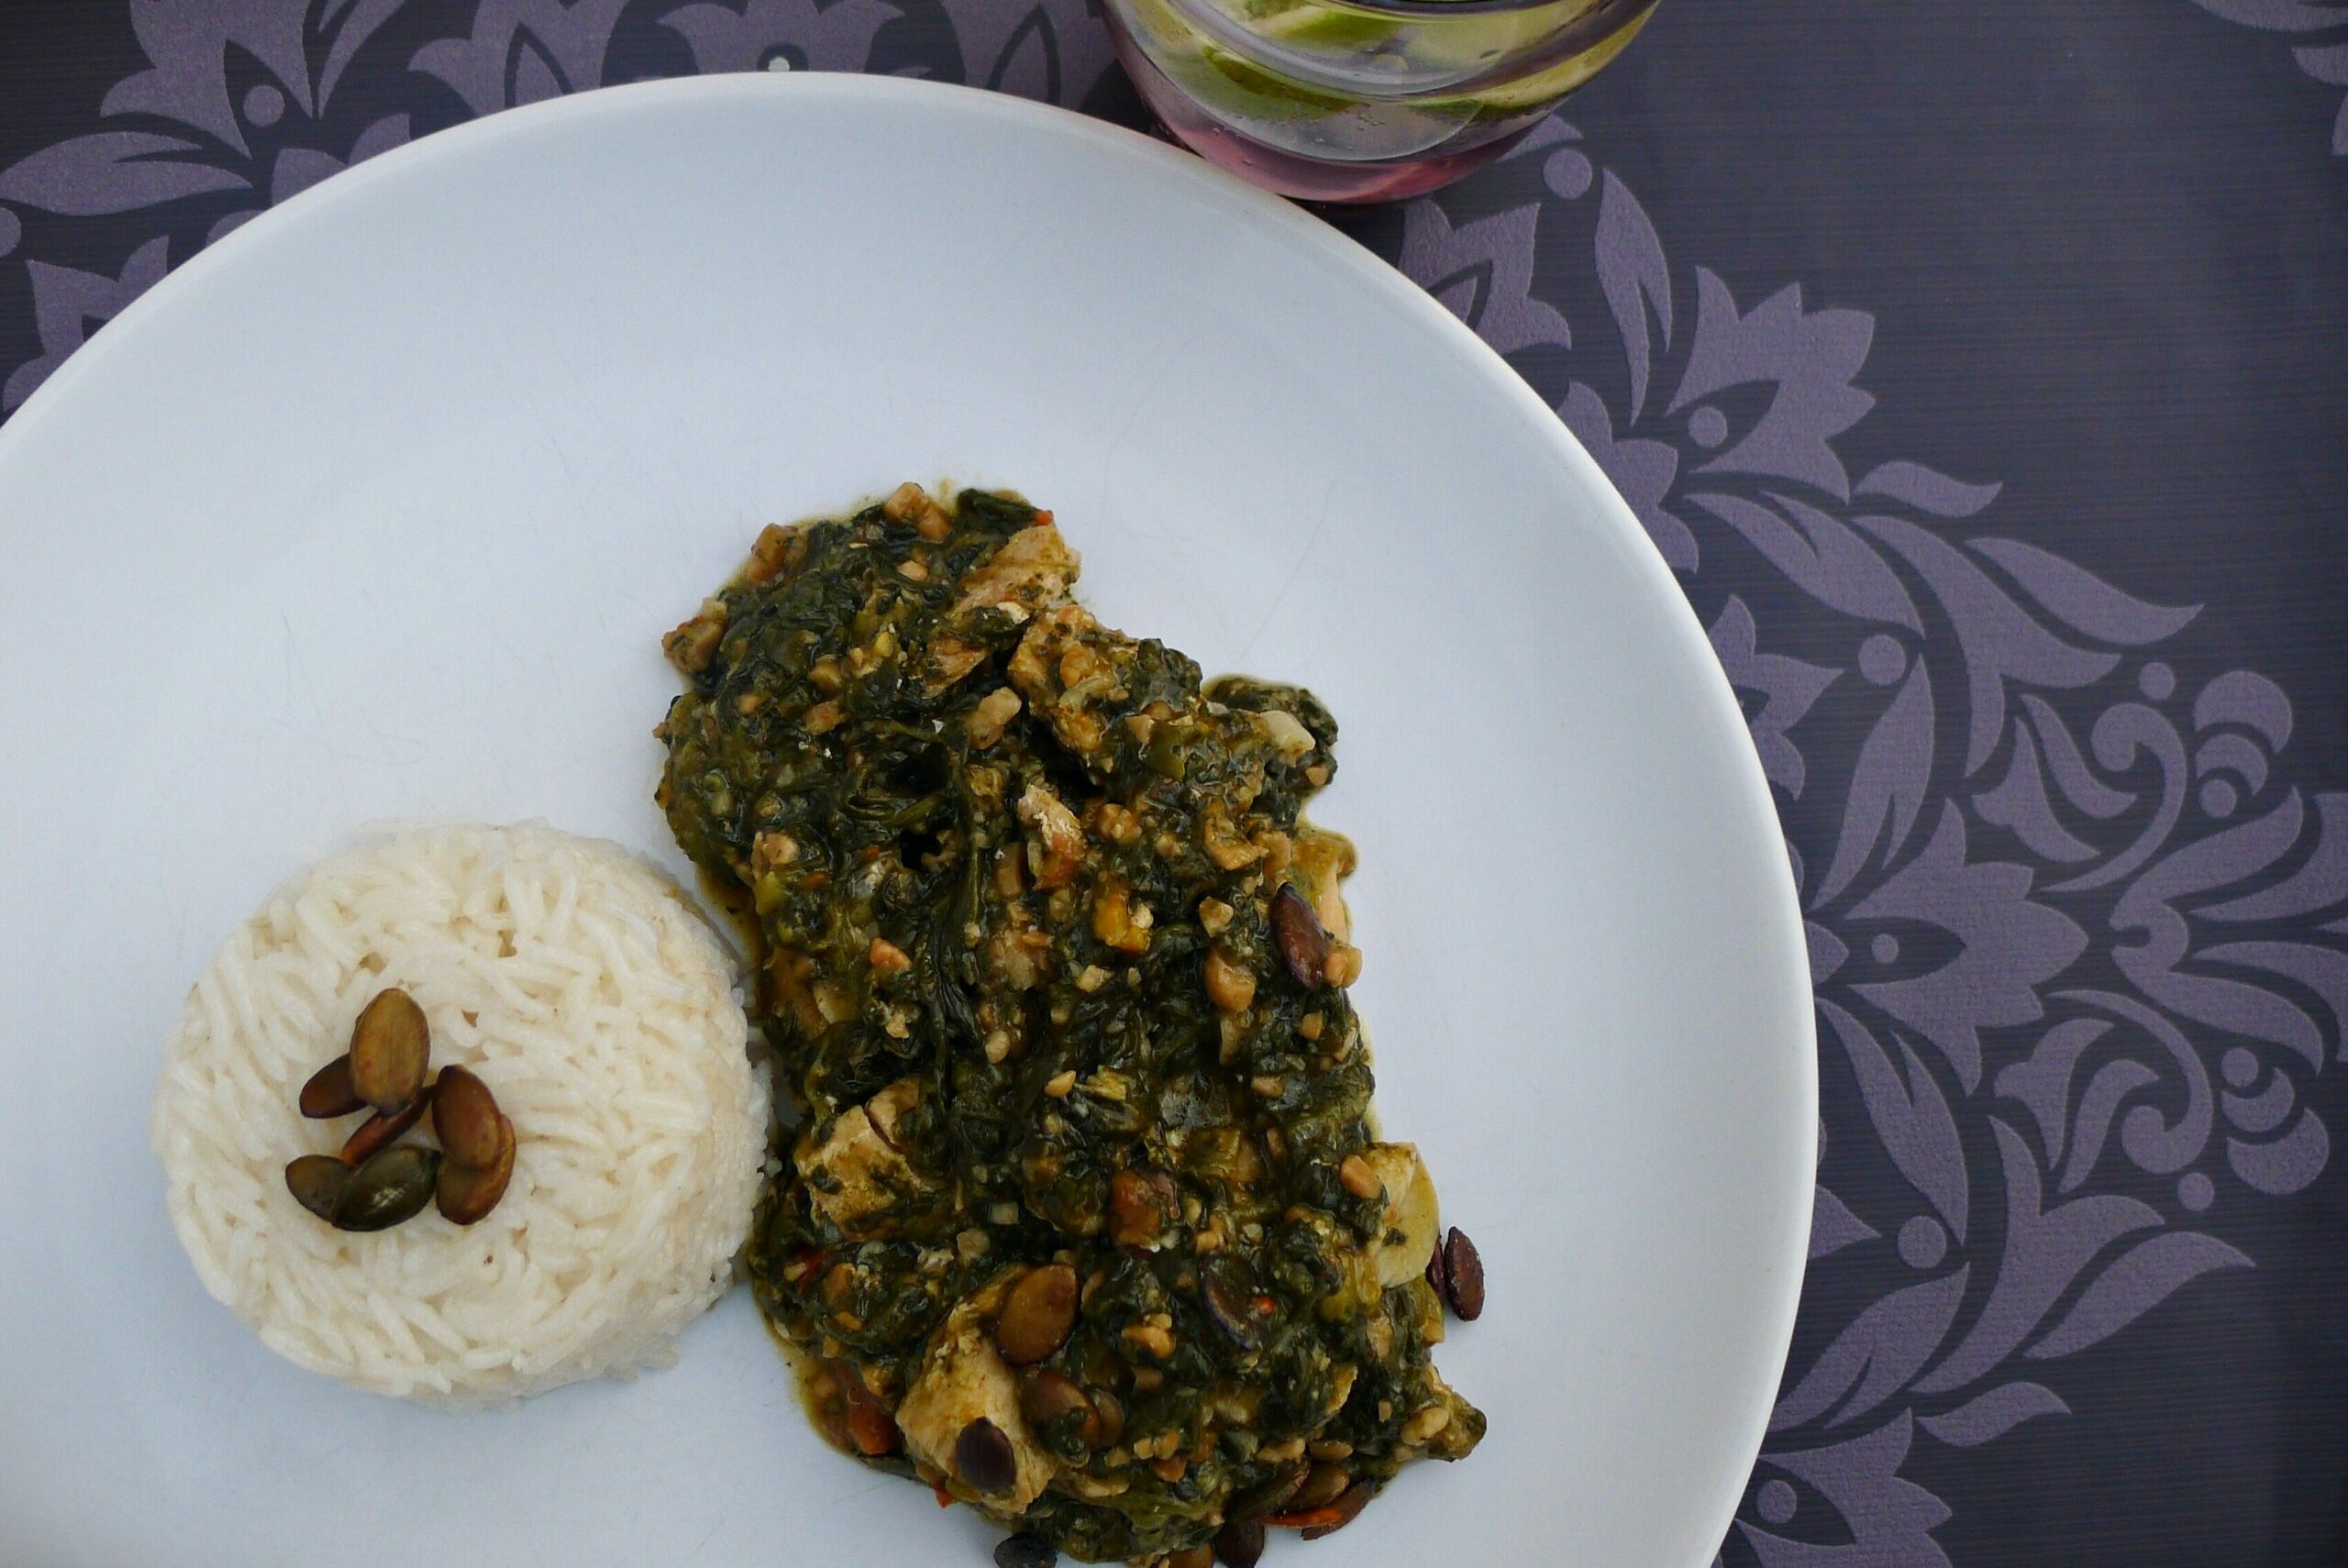 Descubre los sabores auténticos de Liberia con estos platos típicos.